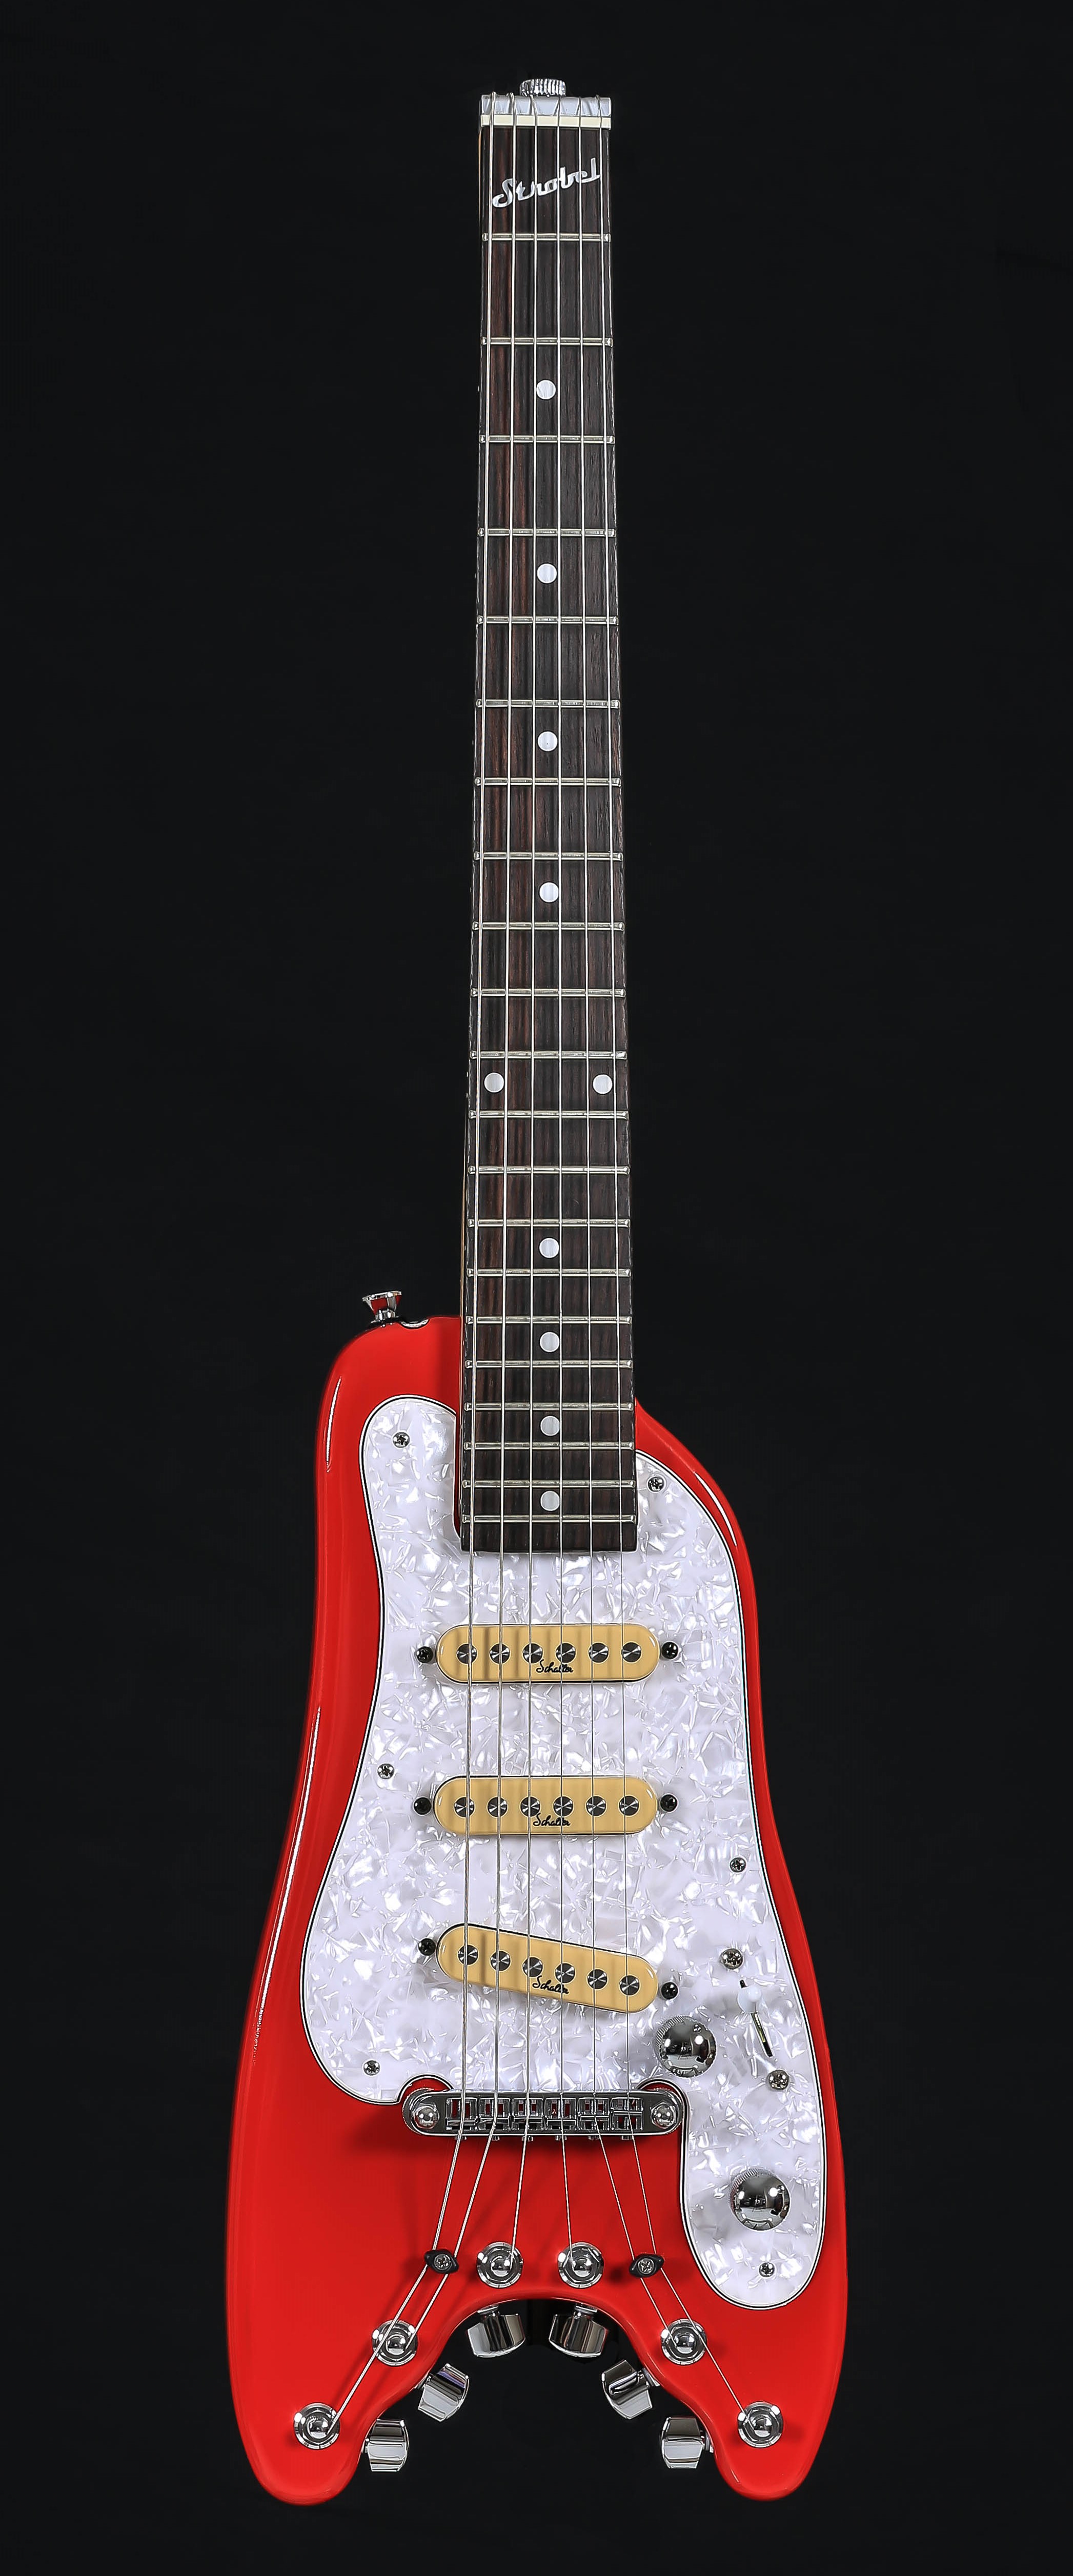 STROBELCASTER Plus Travel Guitar - Dakota Red